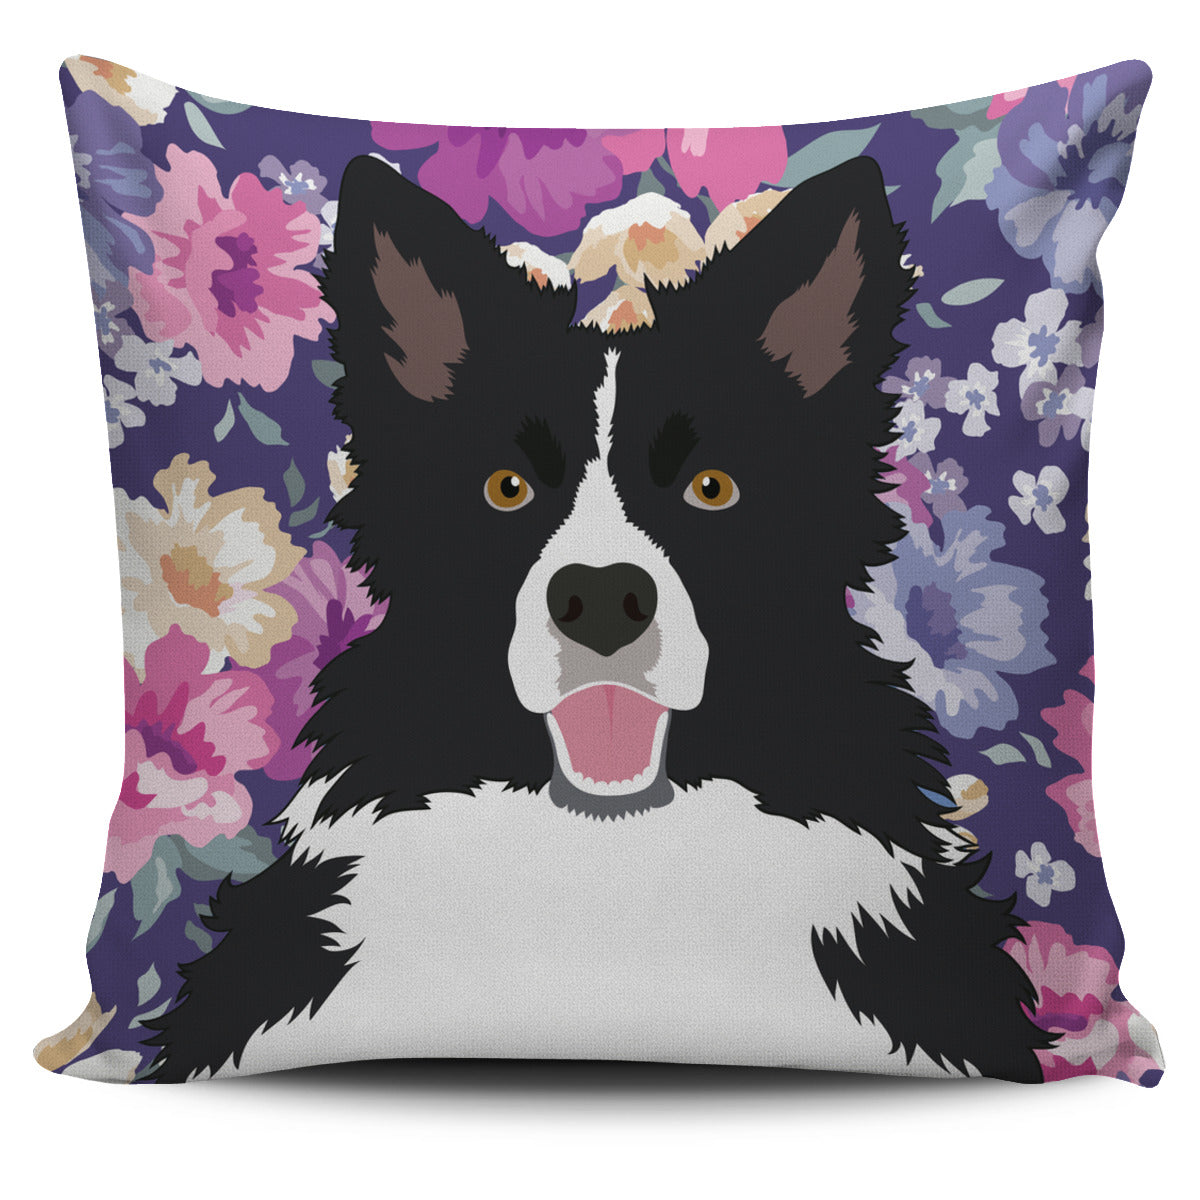 Border Collie Dog Portrait Pillow Cover